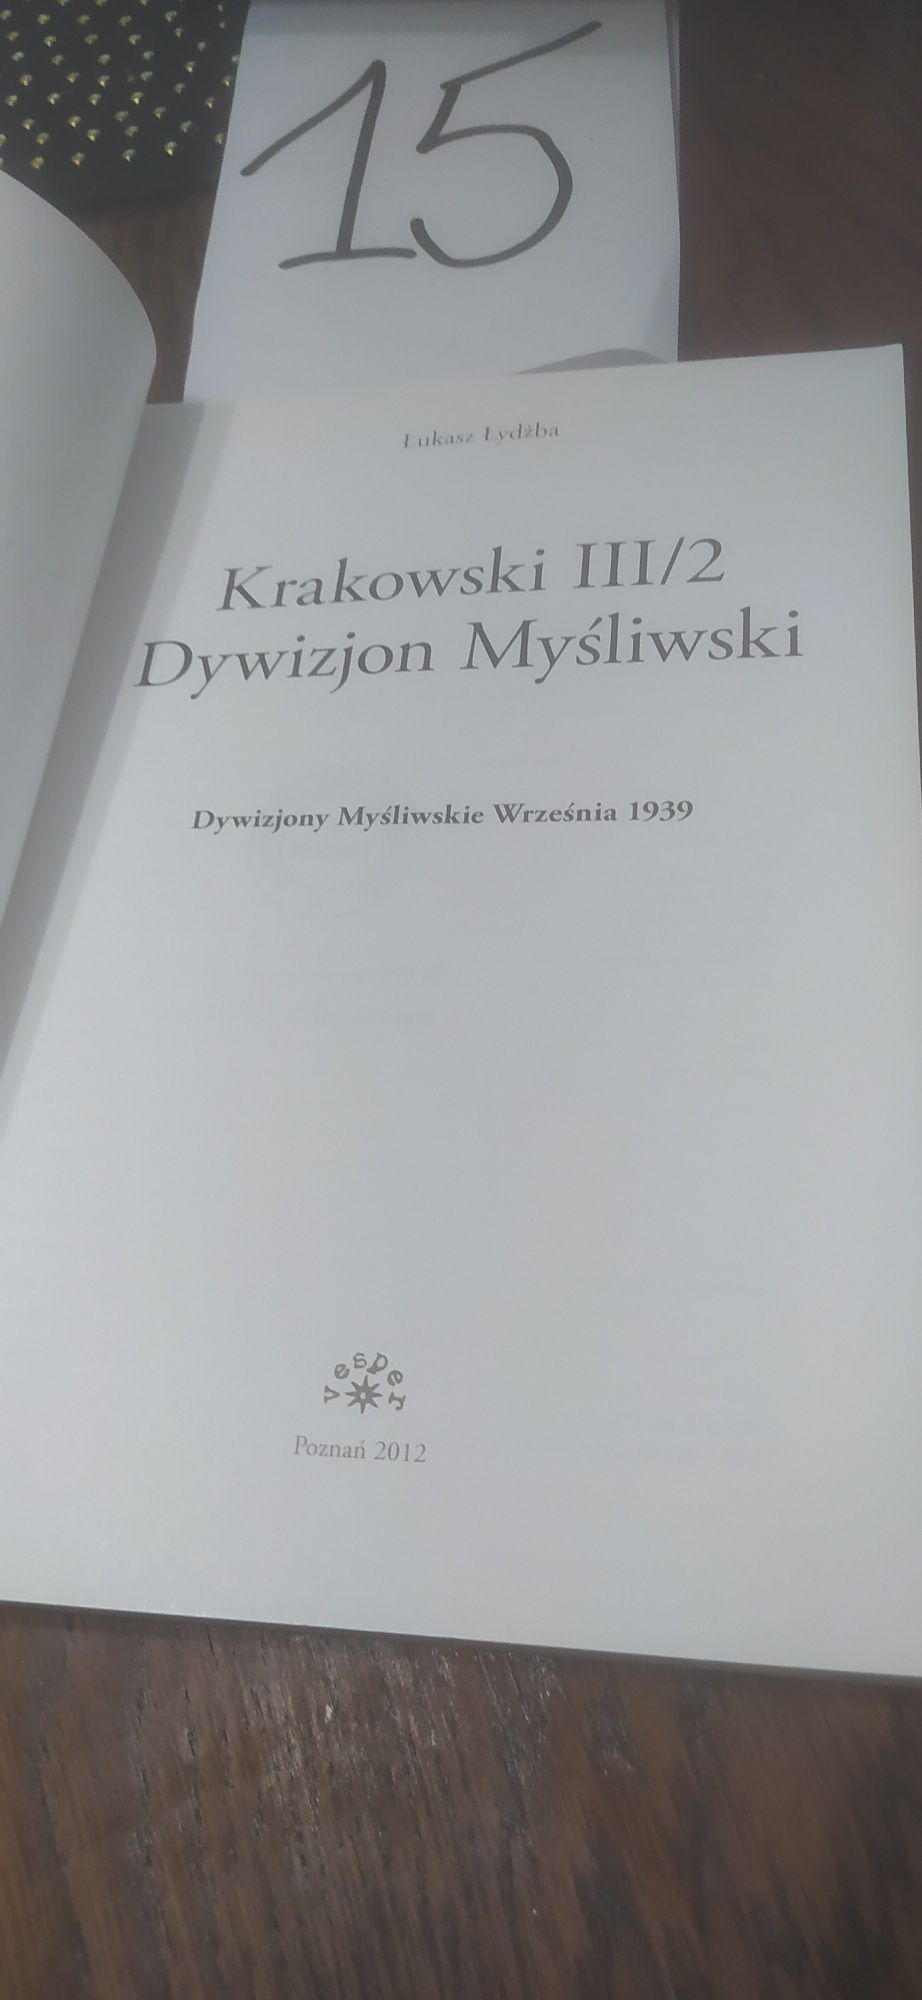 Dywizjon Myśliwski Łukasz Łydżba